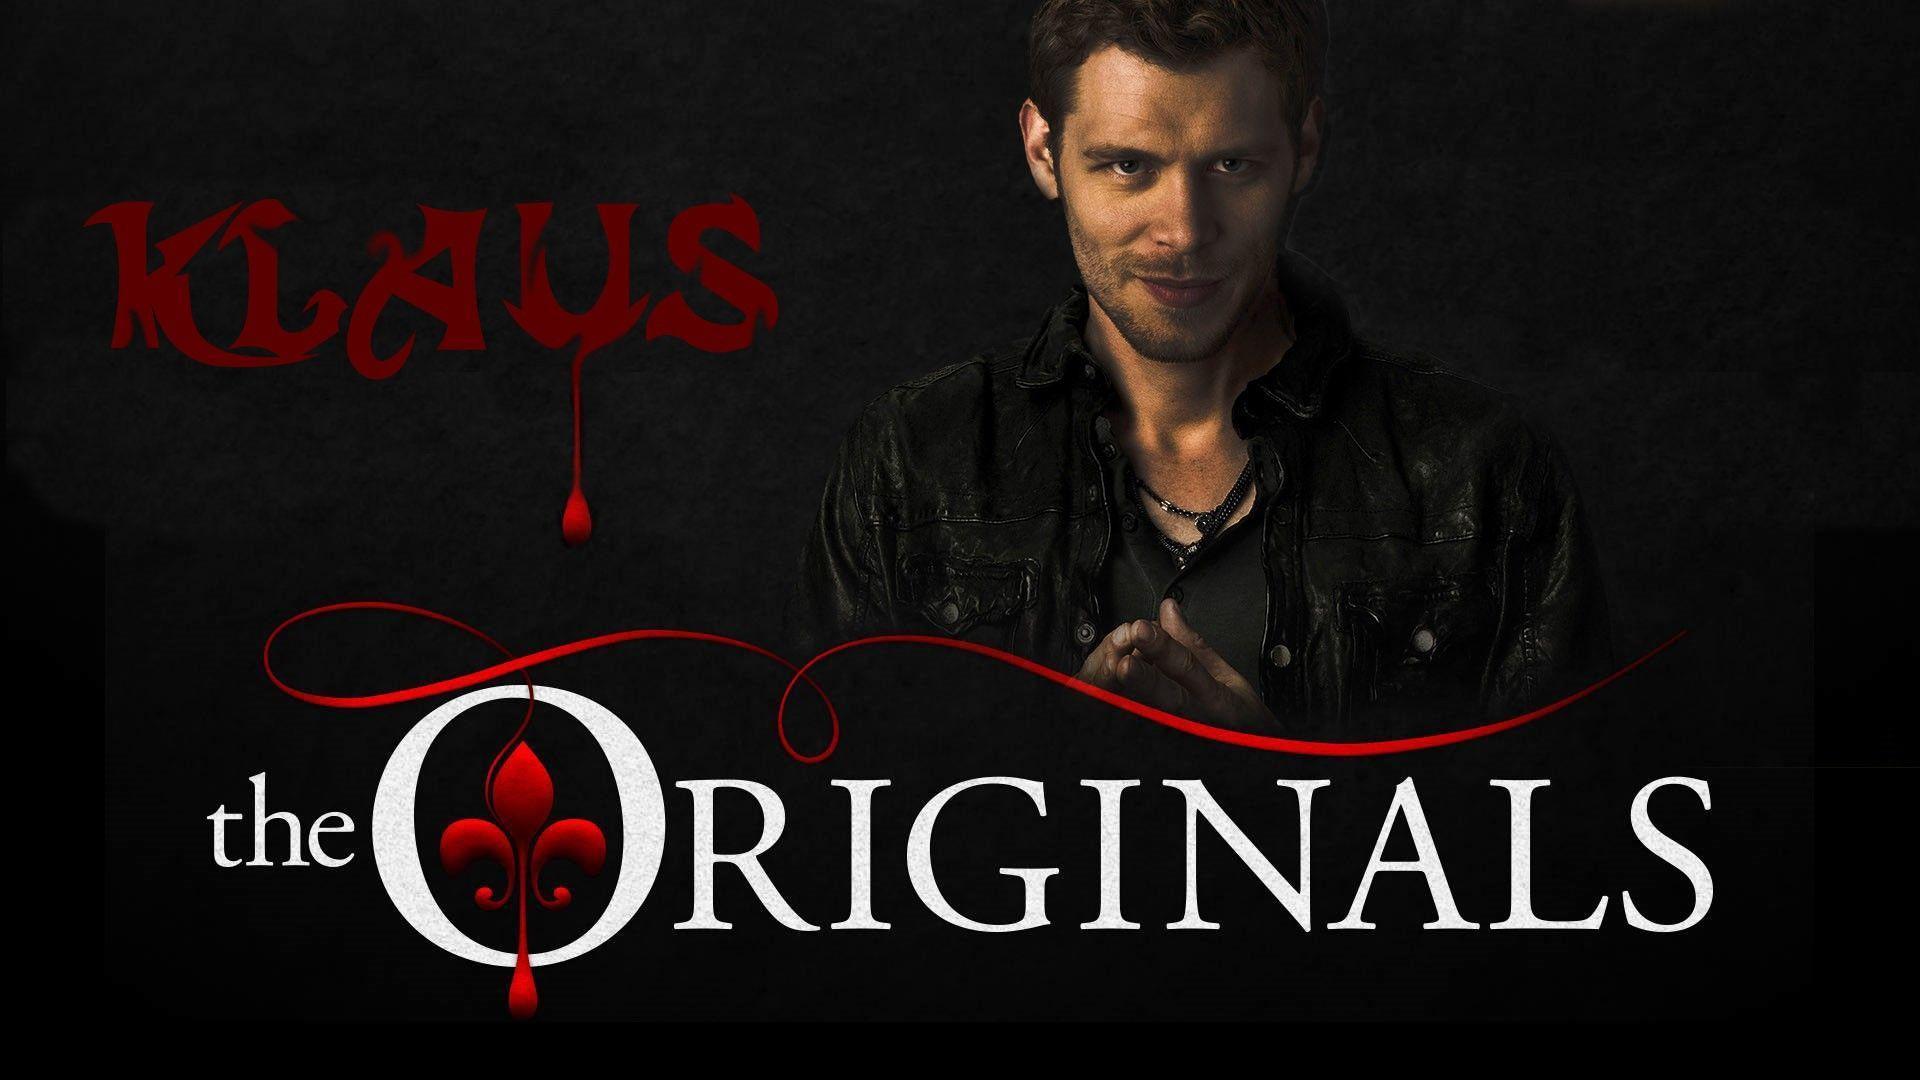 Klaus, The Originals, Joseph Morgan Wallpaper HD / Desktop